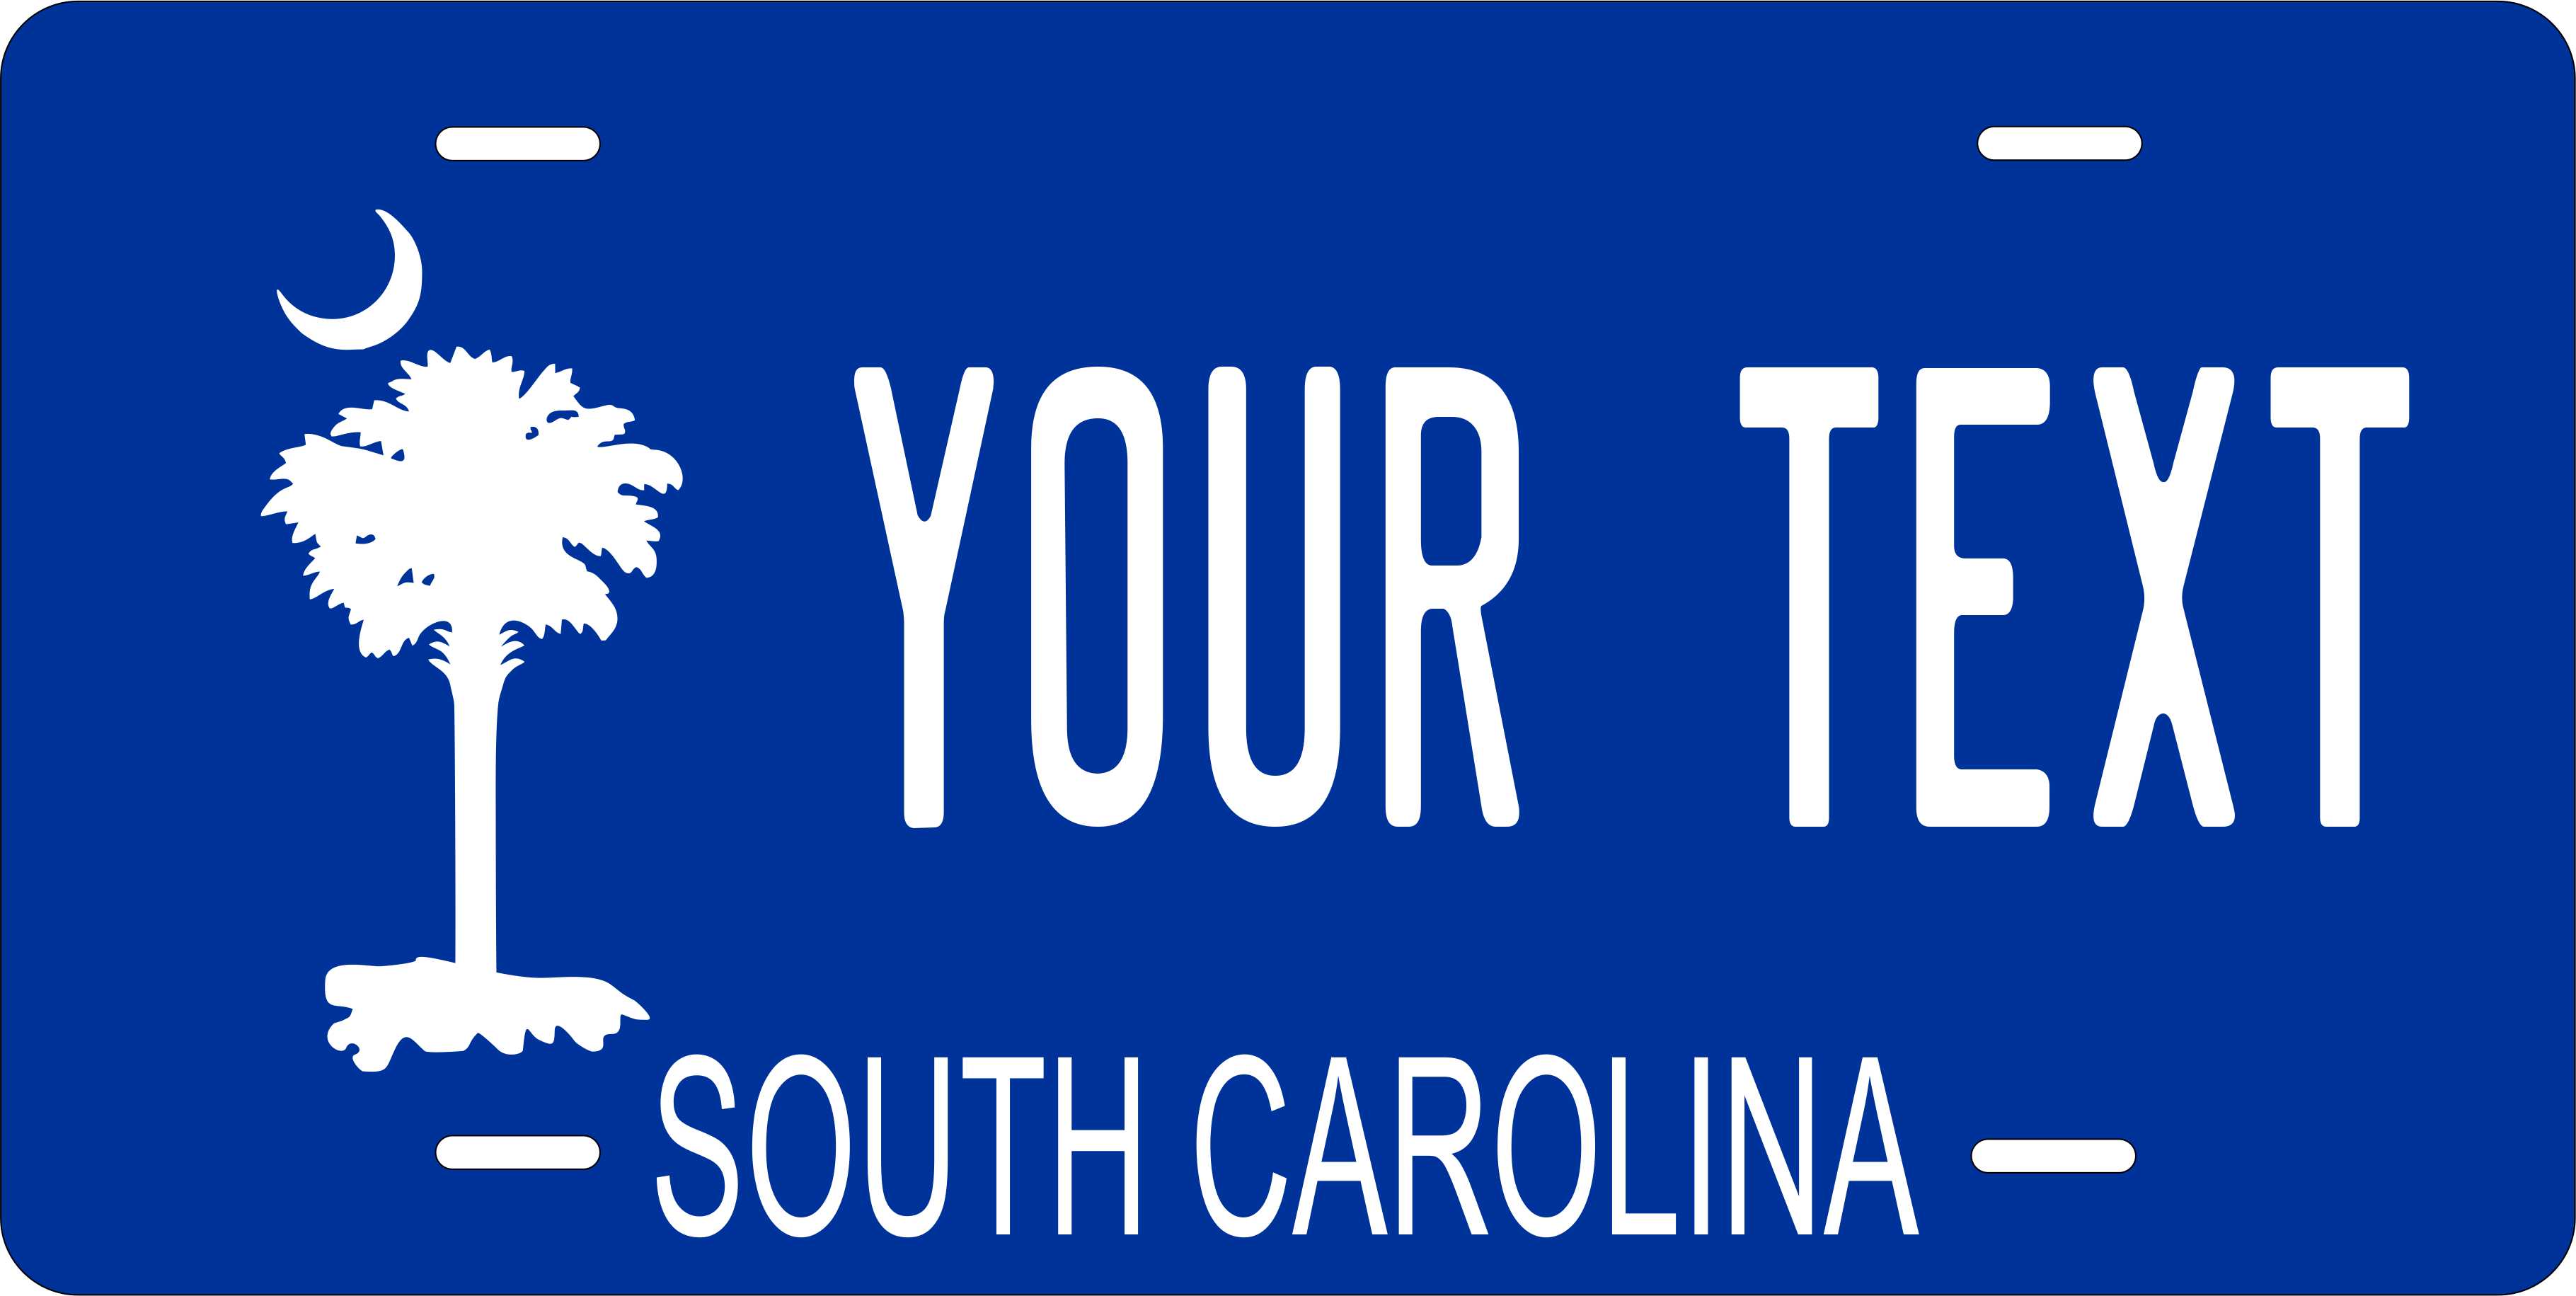 South Carolina Blue Background Photo Zone